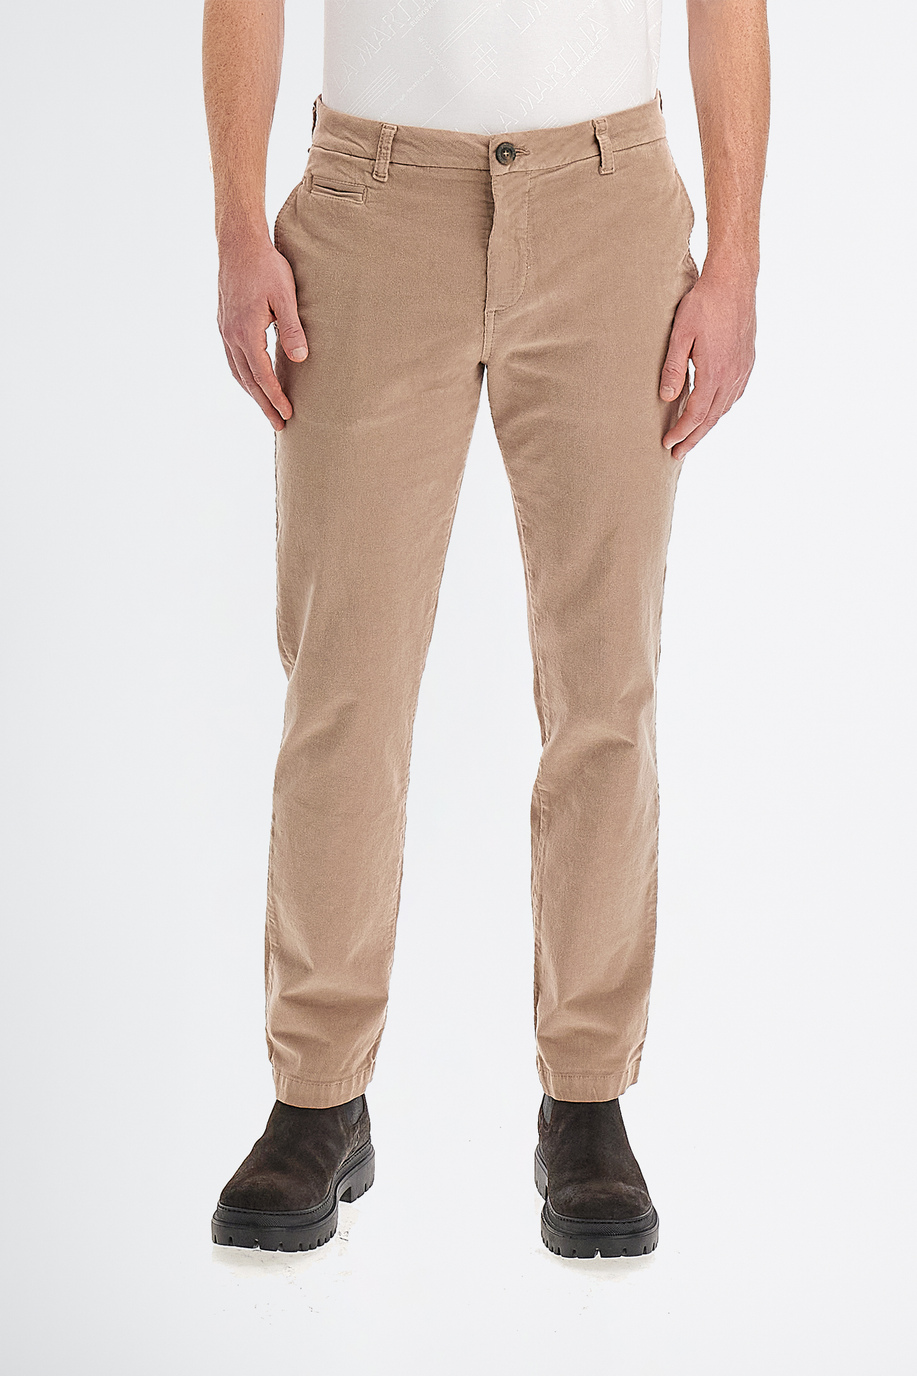 Pantalone da uomo modello 5 tasche in velluto a coste regular fit - Pantaloni | La Martina - Official Online Shop